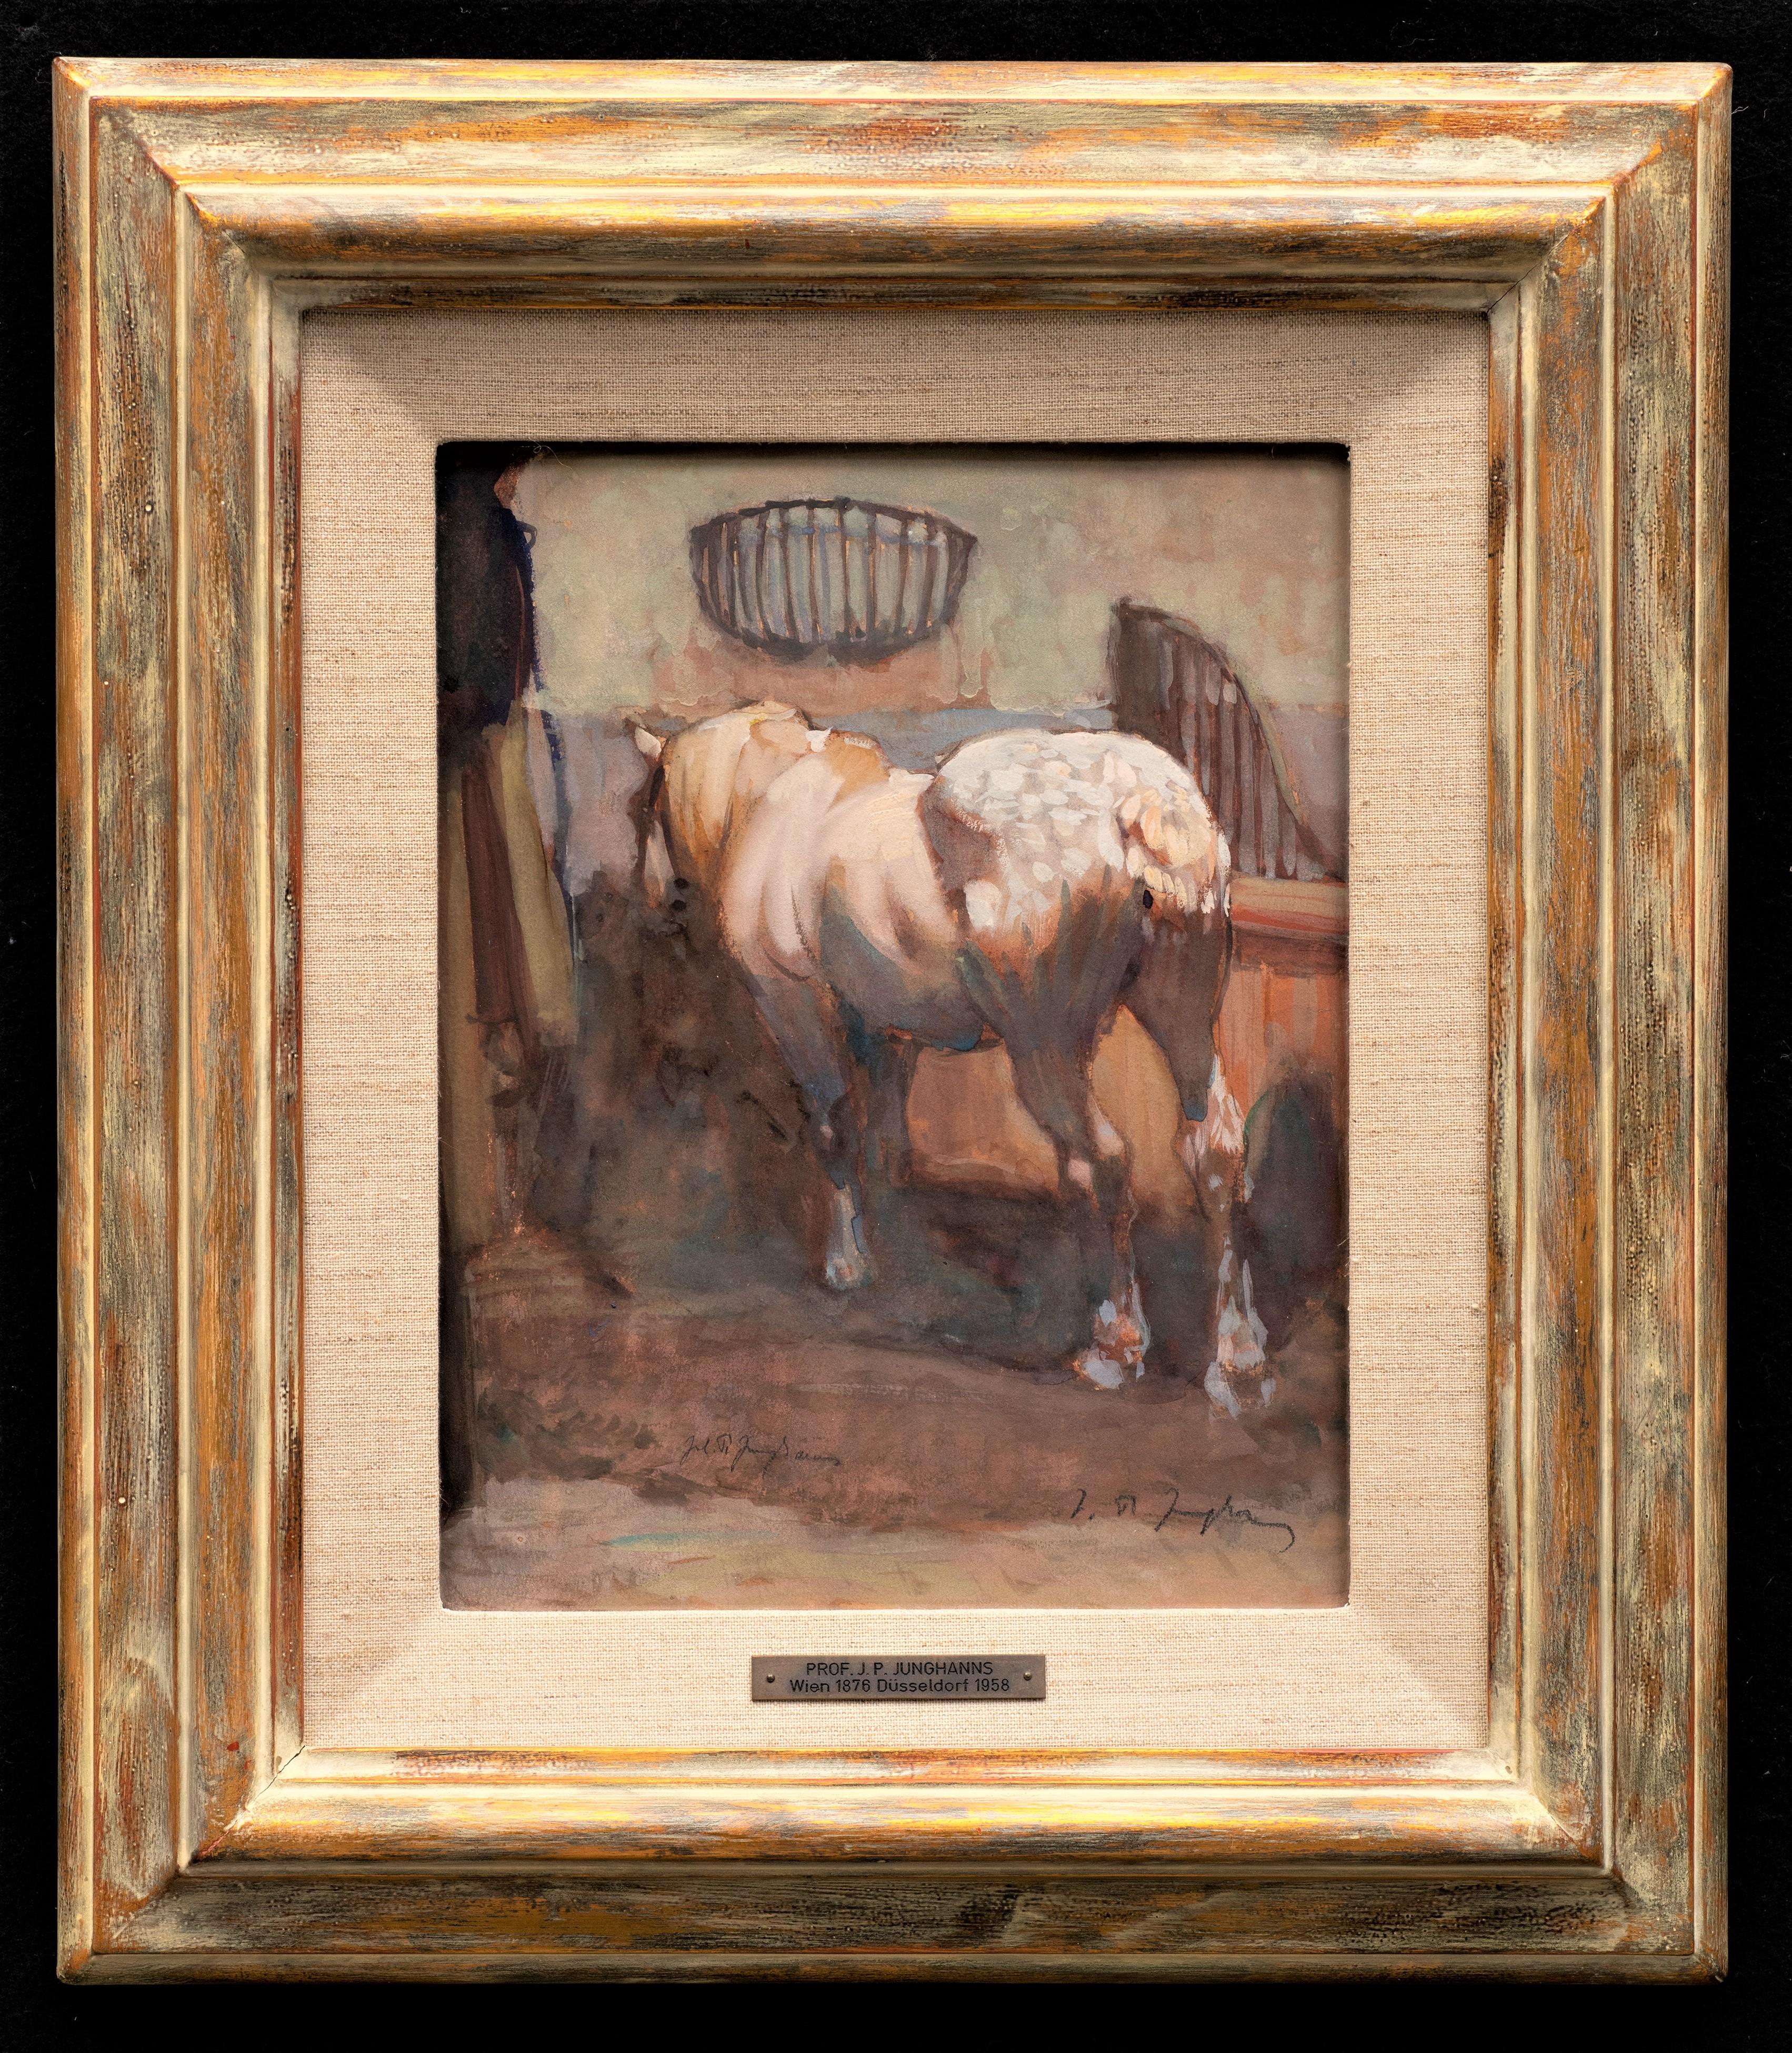 Peinture ancienne de cheval
"Cheval pommelé dans son box".
Julius Paul Junghanns (allemand, 1876-1958)
Aquarelle, gouache, papier
10 7/8 x 8 1/2 (18 x 5 1/4 cadre) pouces 
Signé en bas à gauche au centre et en bas à droite

Pour une aquarelle, cette